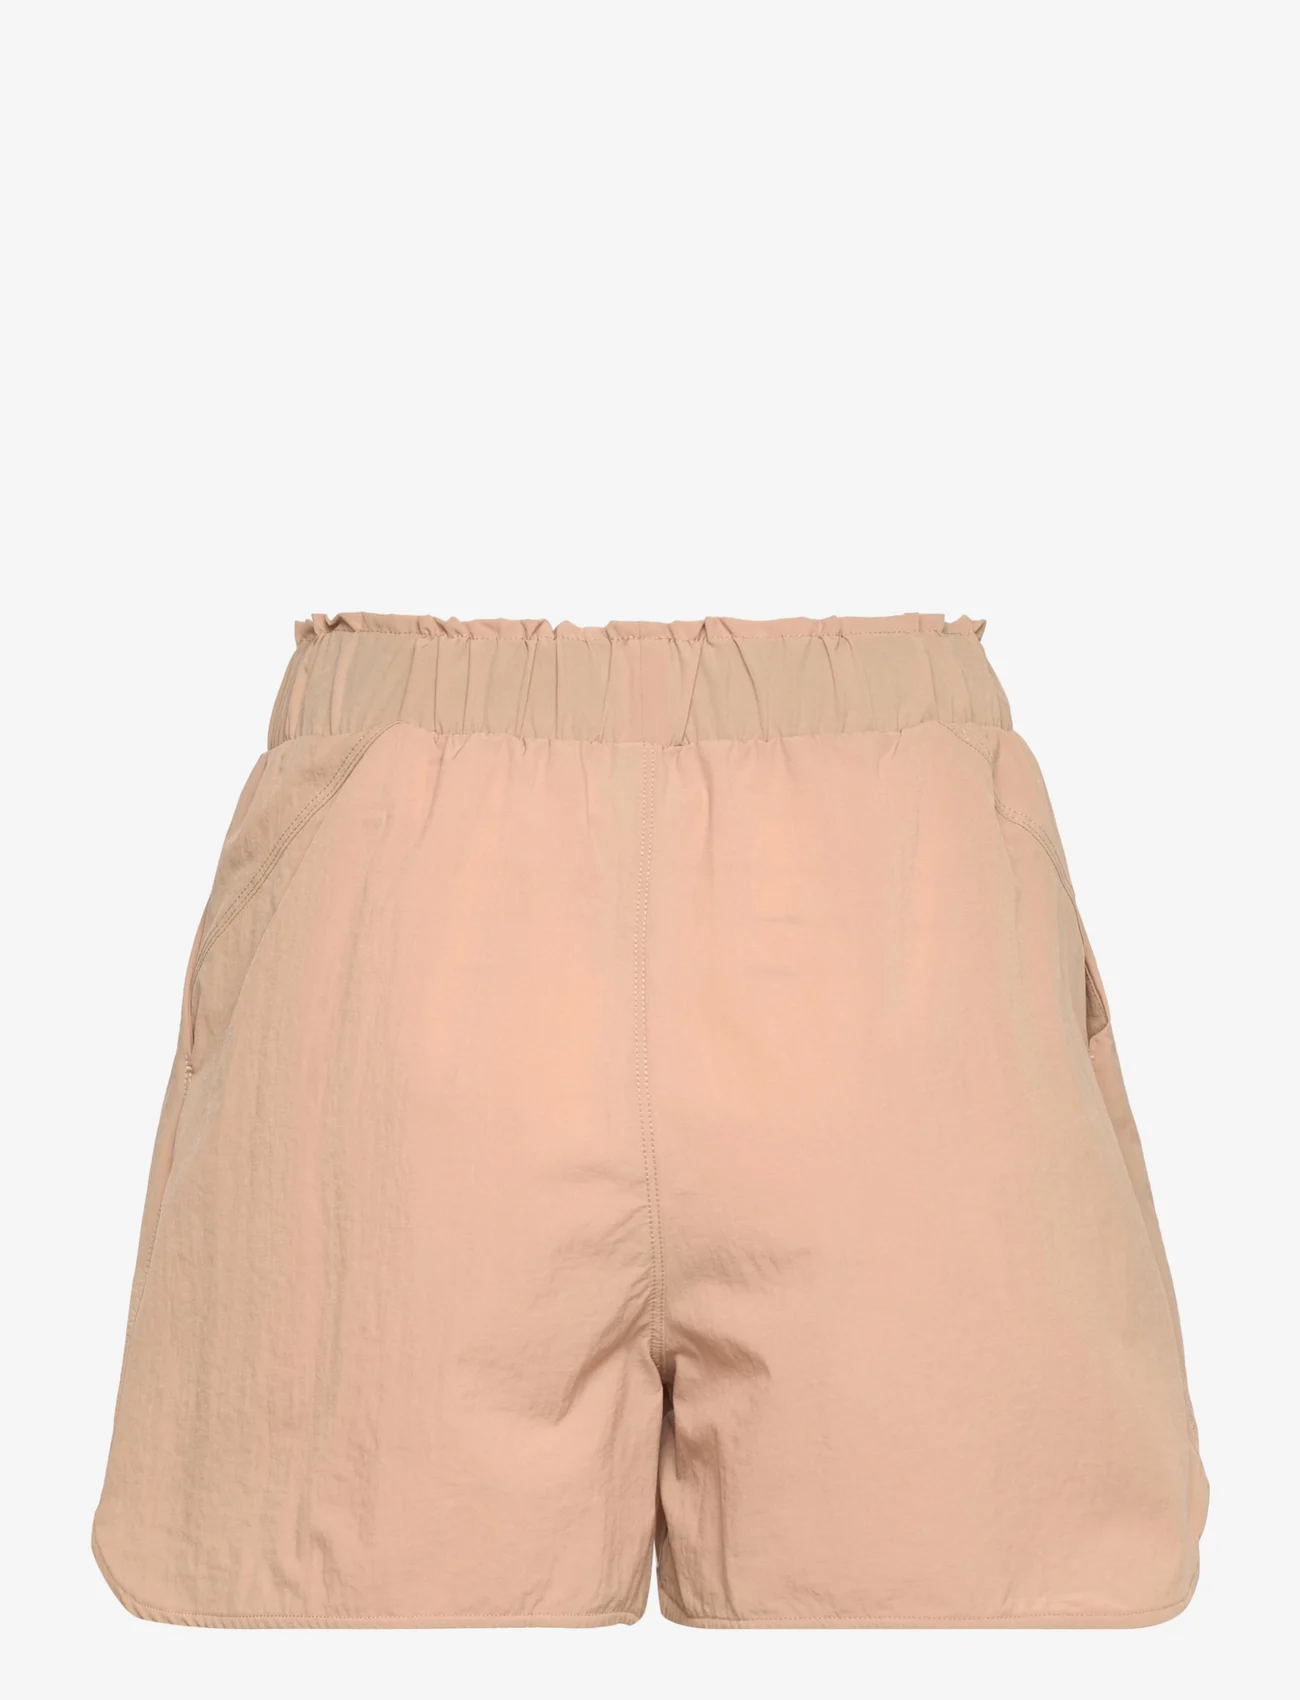 Svea - W. Drawstring Shorts - kasdienio stiliaus šortai - khaki - 1